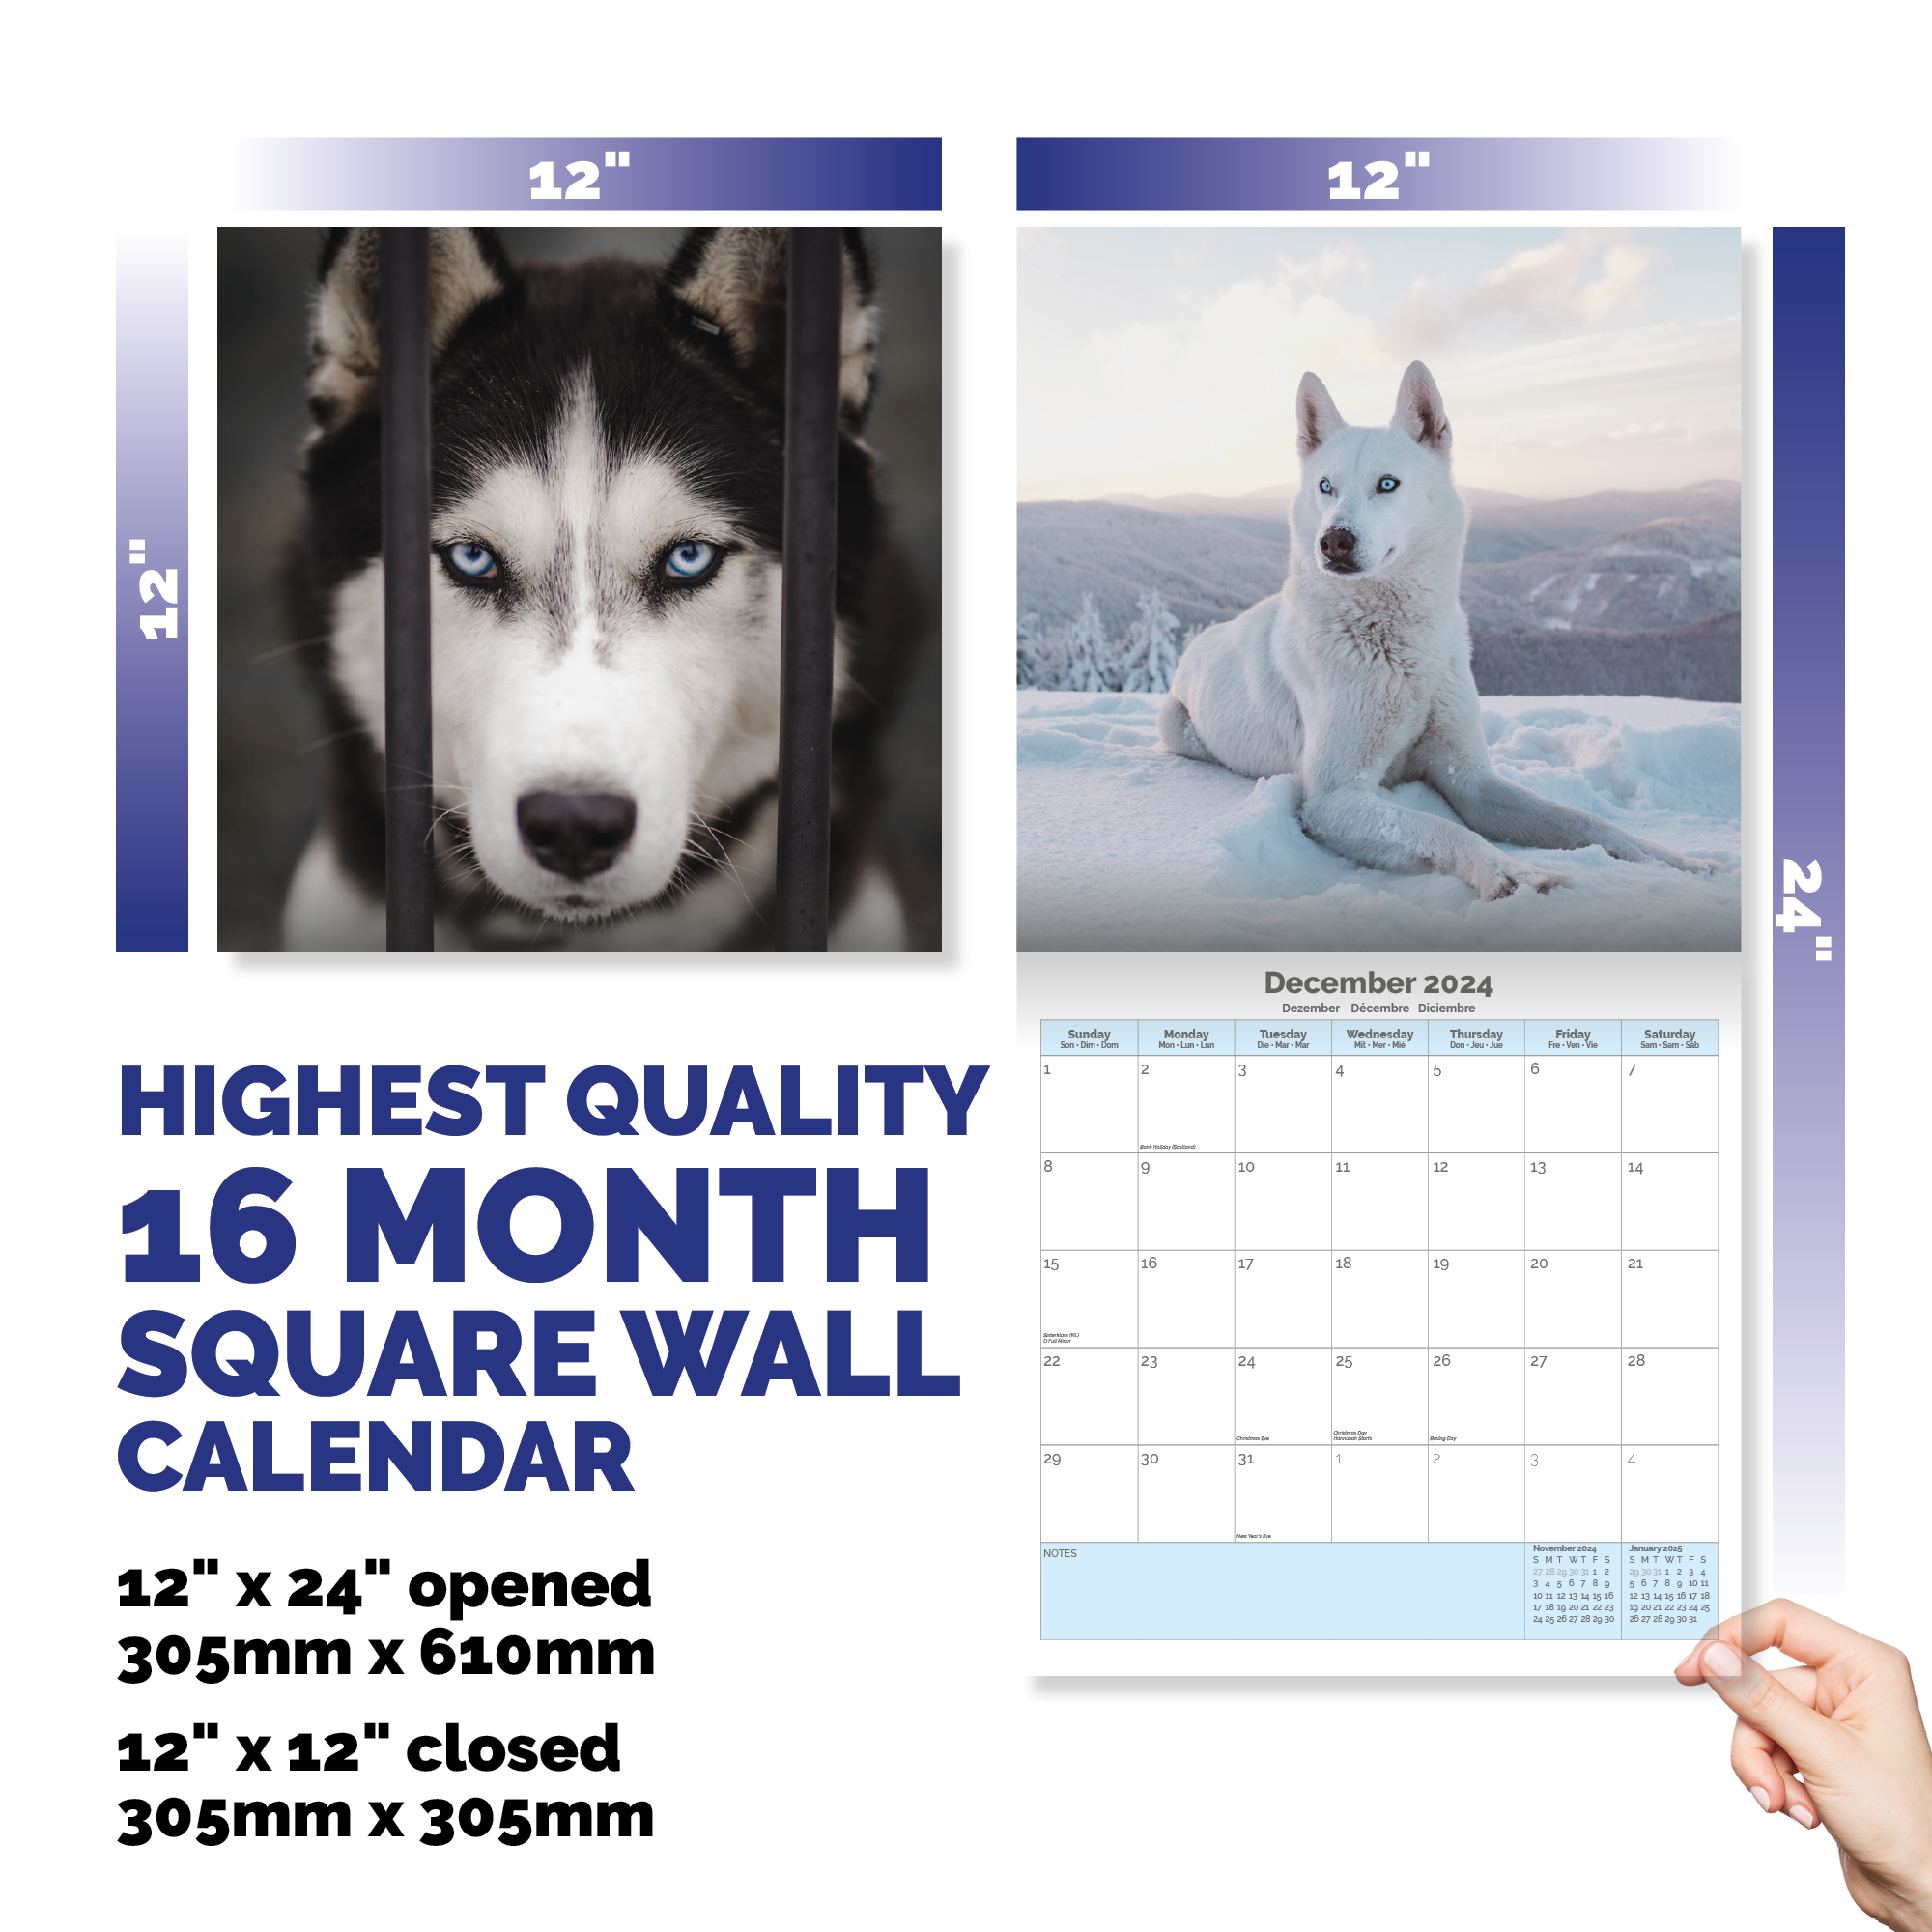 Siberian Husky Calendar 2024